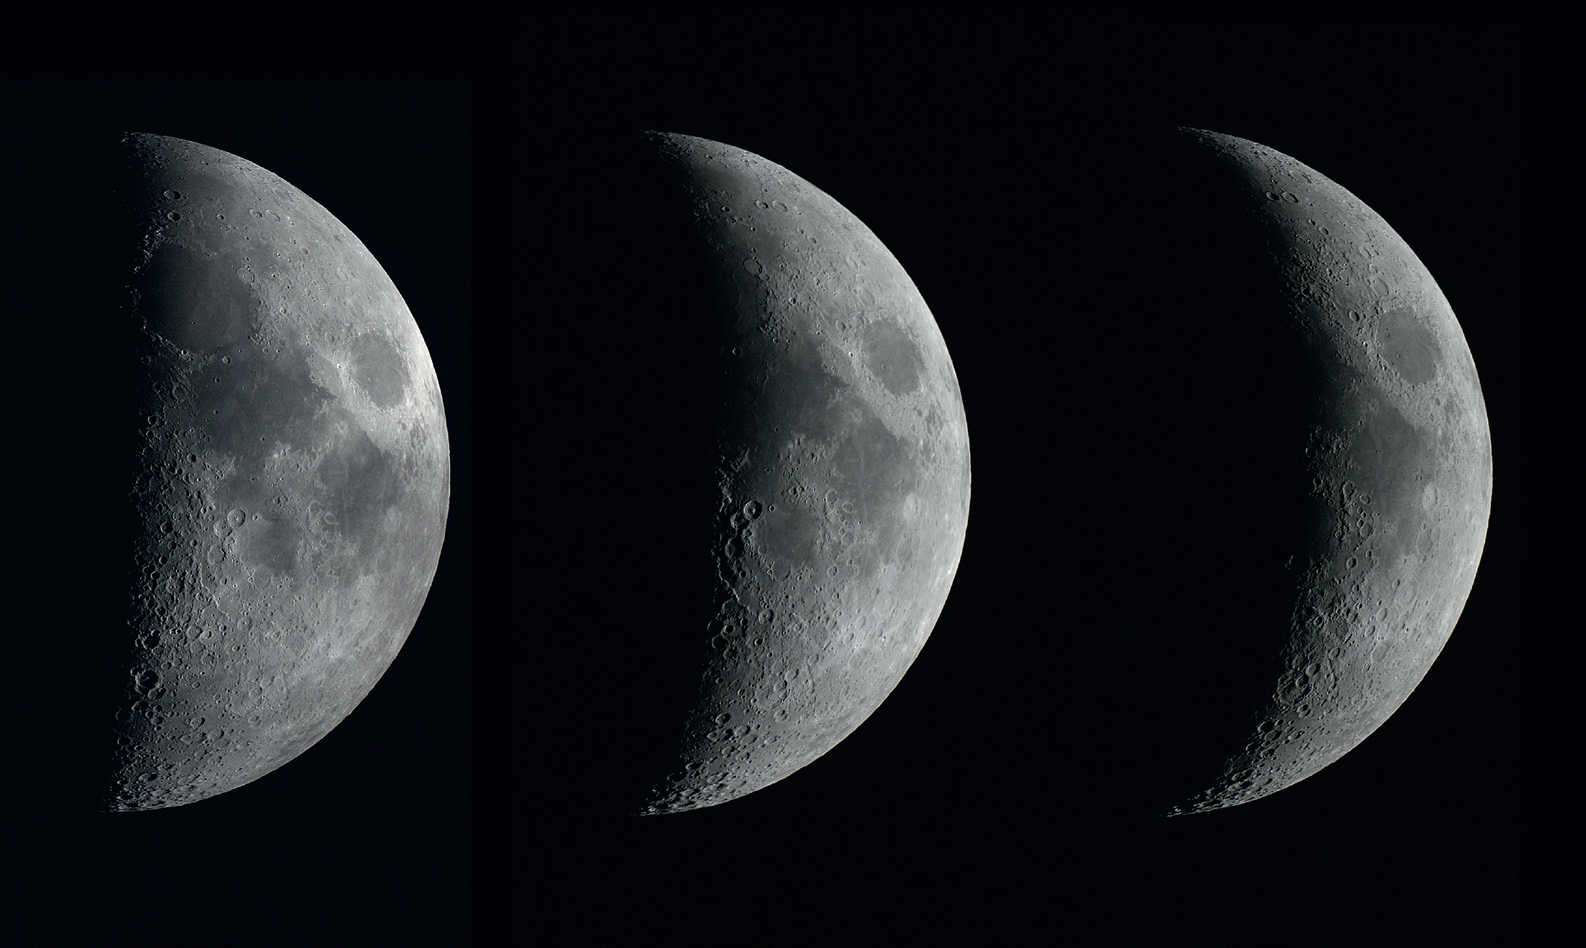 As fases da Lua em quarto crescente em três dias consecutivos. As imagens foram tiradas com uma DSLR do tipo Canon 450D num refrator com uma abertura de 102 mm e uma distância focal de 1000 mm em intervalos de um dia. U. Dittler 